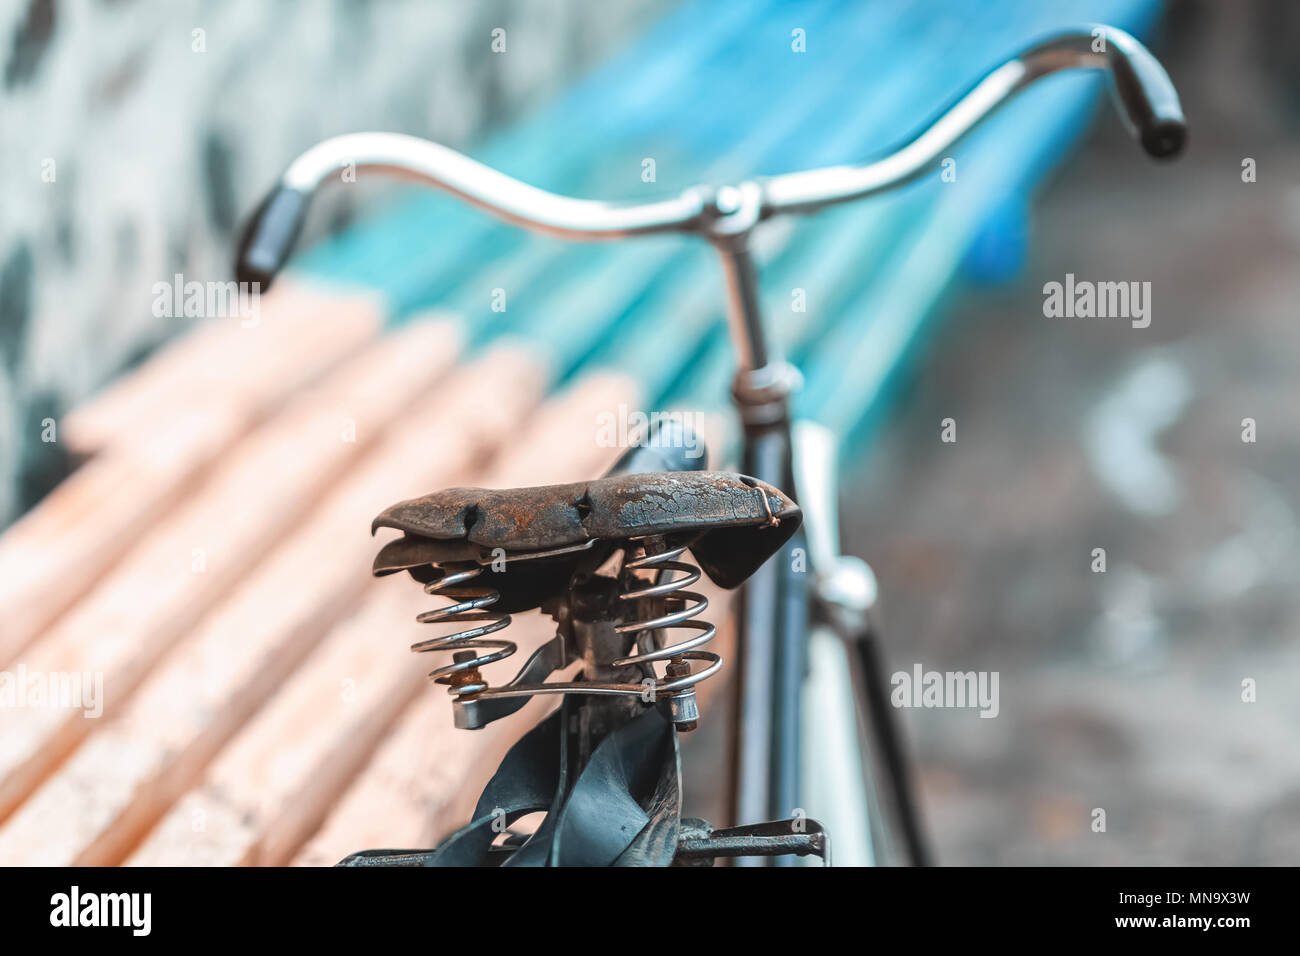 Ein altes Fahrrad mit einer Feder Stoßdämpfer. Vintage Fahrrad auf der Steinmauer Hintergrund. Stockfoto